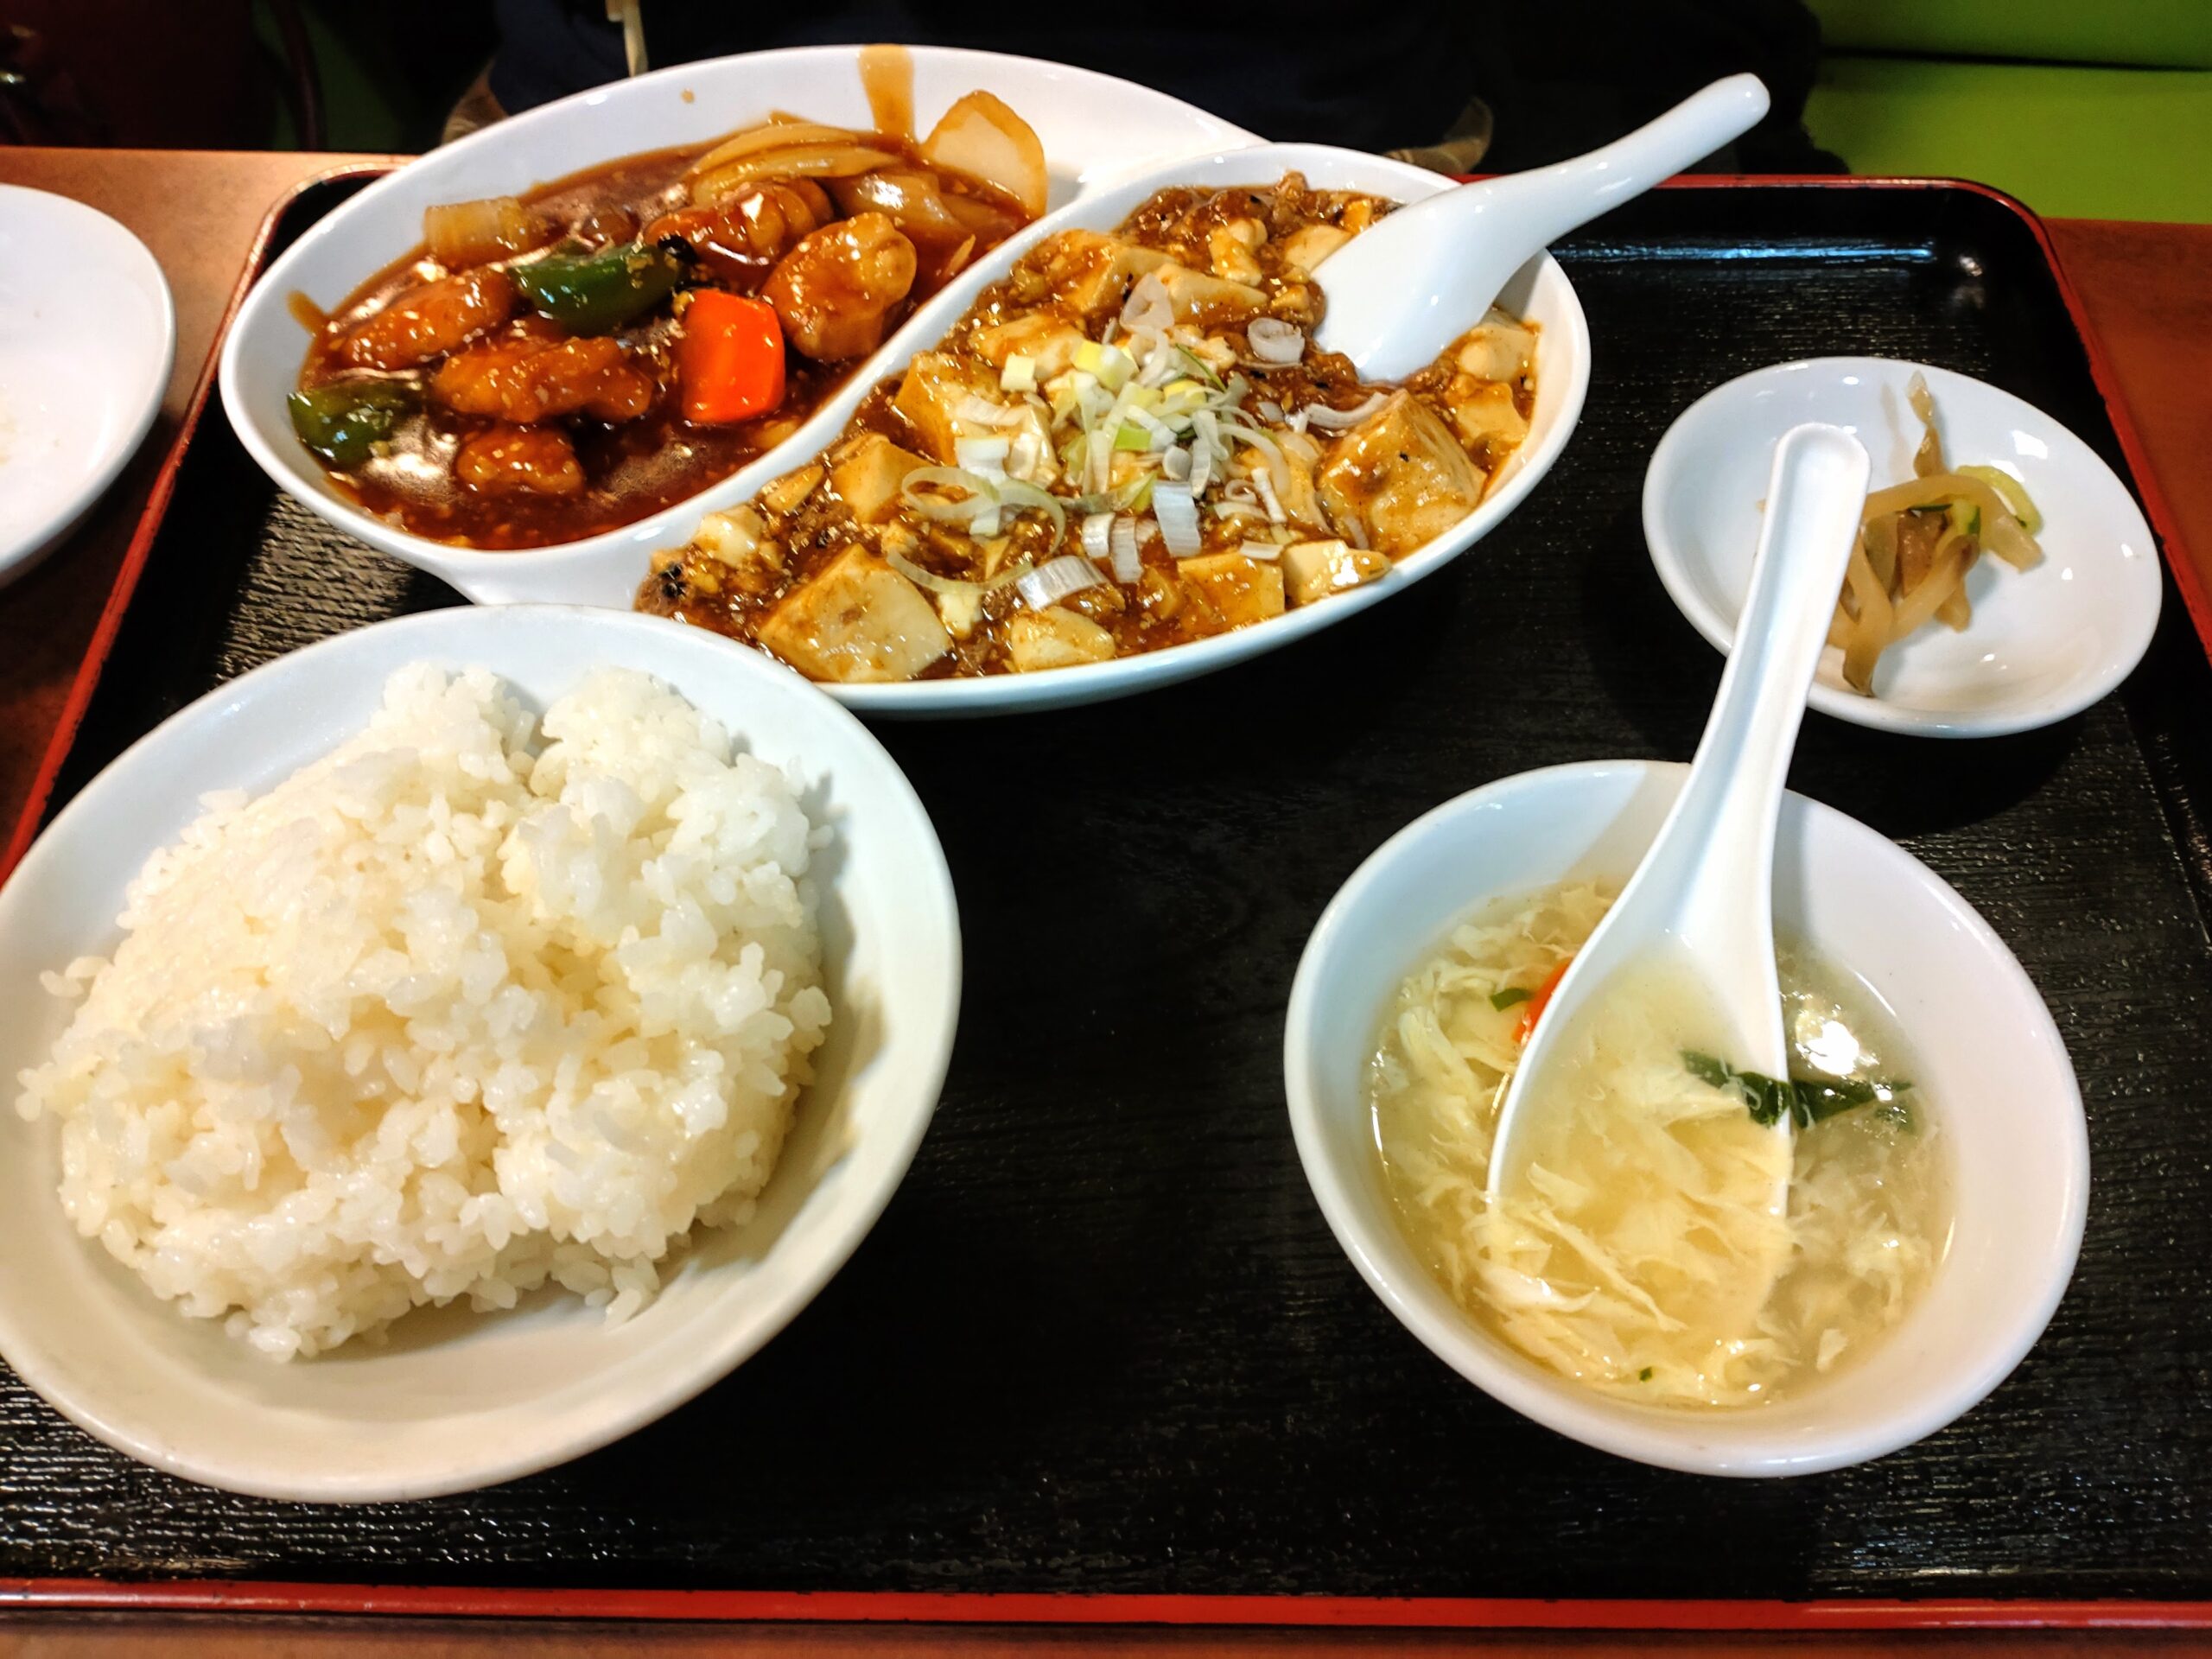 酢豚と麻婆豆腐のセット(880円)